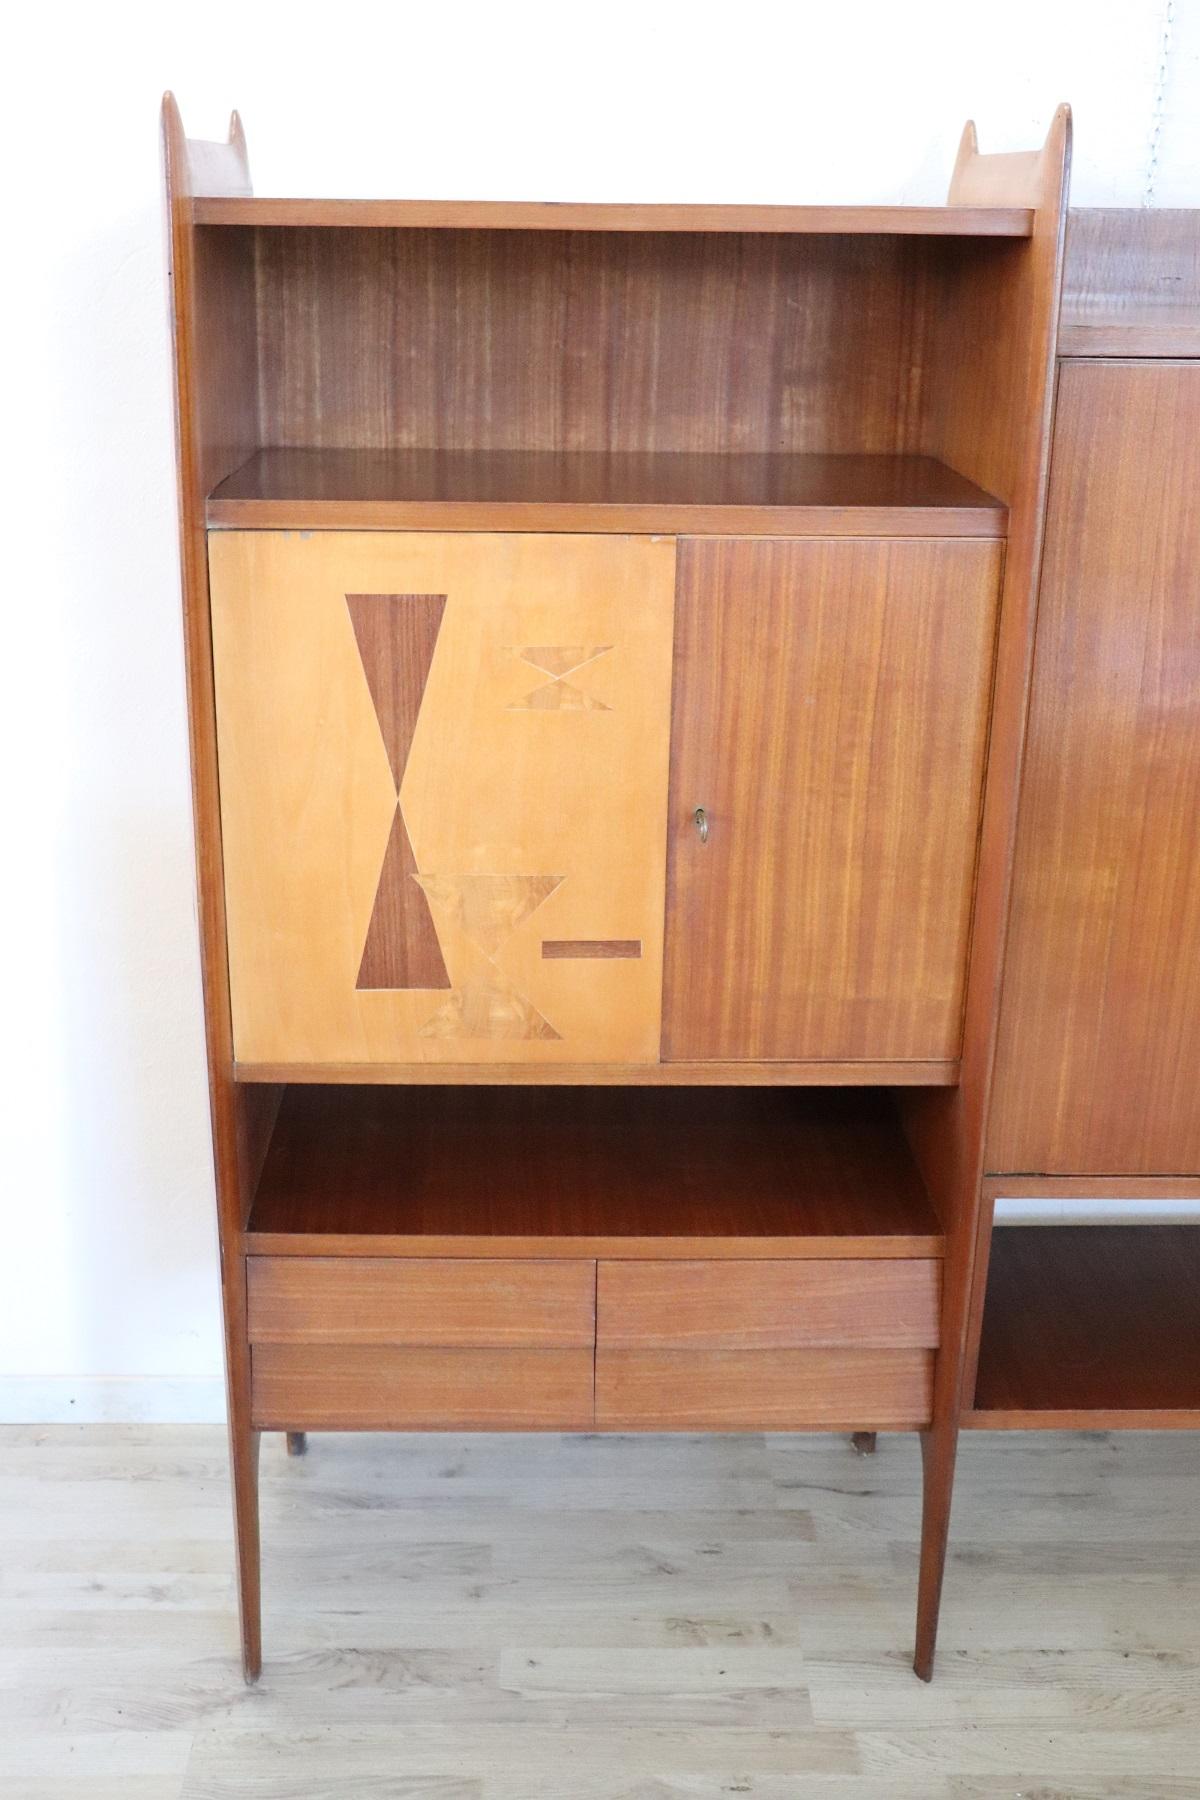 Italienisches Design Bücherregal oder Schrank 1960er Jahre hohe Qualität Möbel. Dieses italienische Designermöbel ist aus Teakholz gefertigt und kann auf verschiedene Weise verwendet werden. Sie können praktische Bücherregale oder Schränke für das